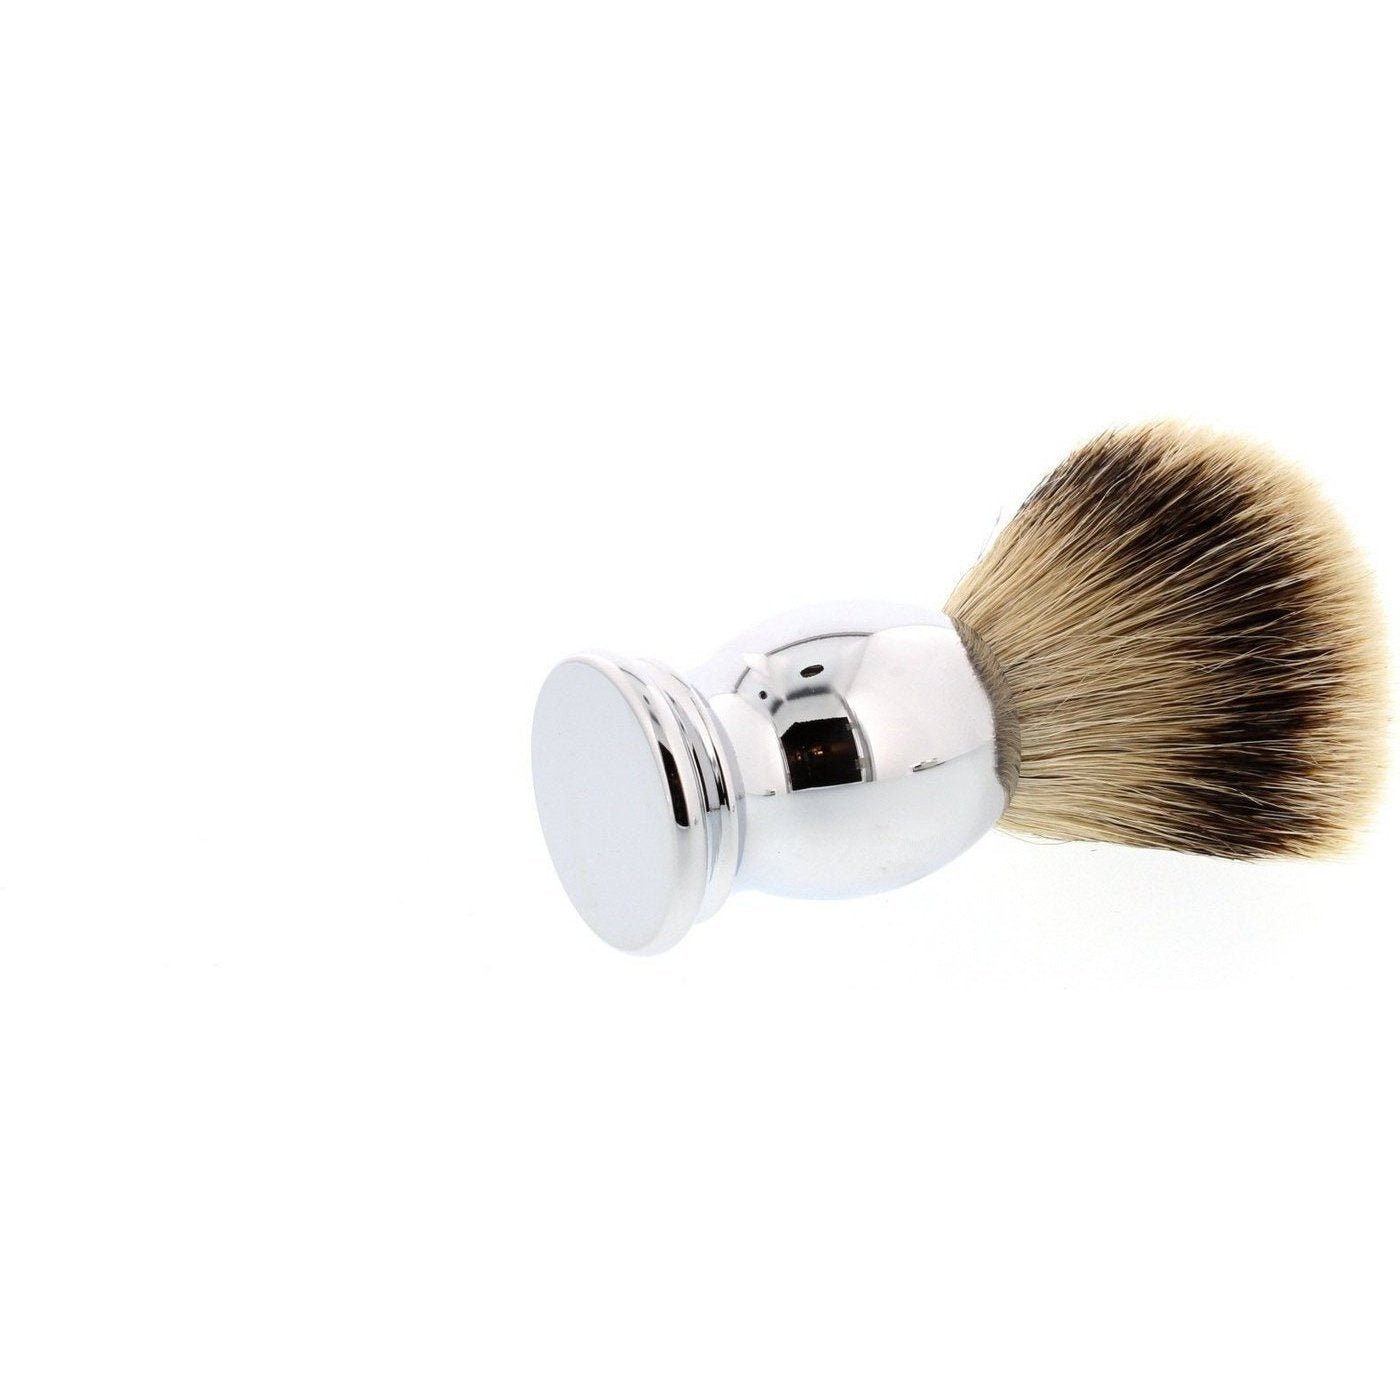 Product image 4 for Parker CHST Silvertip Badger Shaving Brush, Chrome Handle